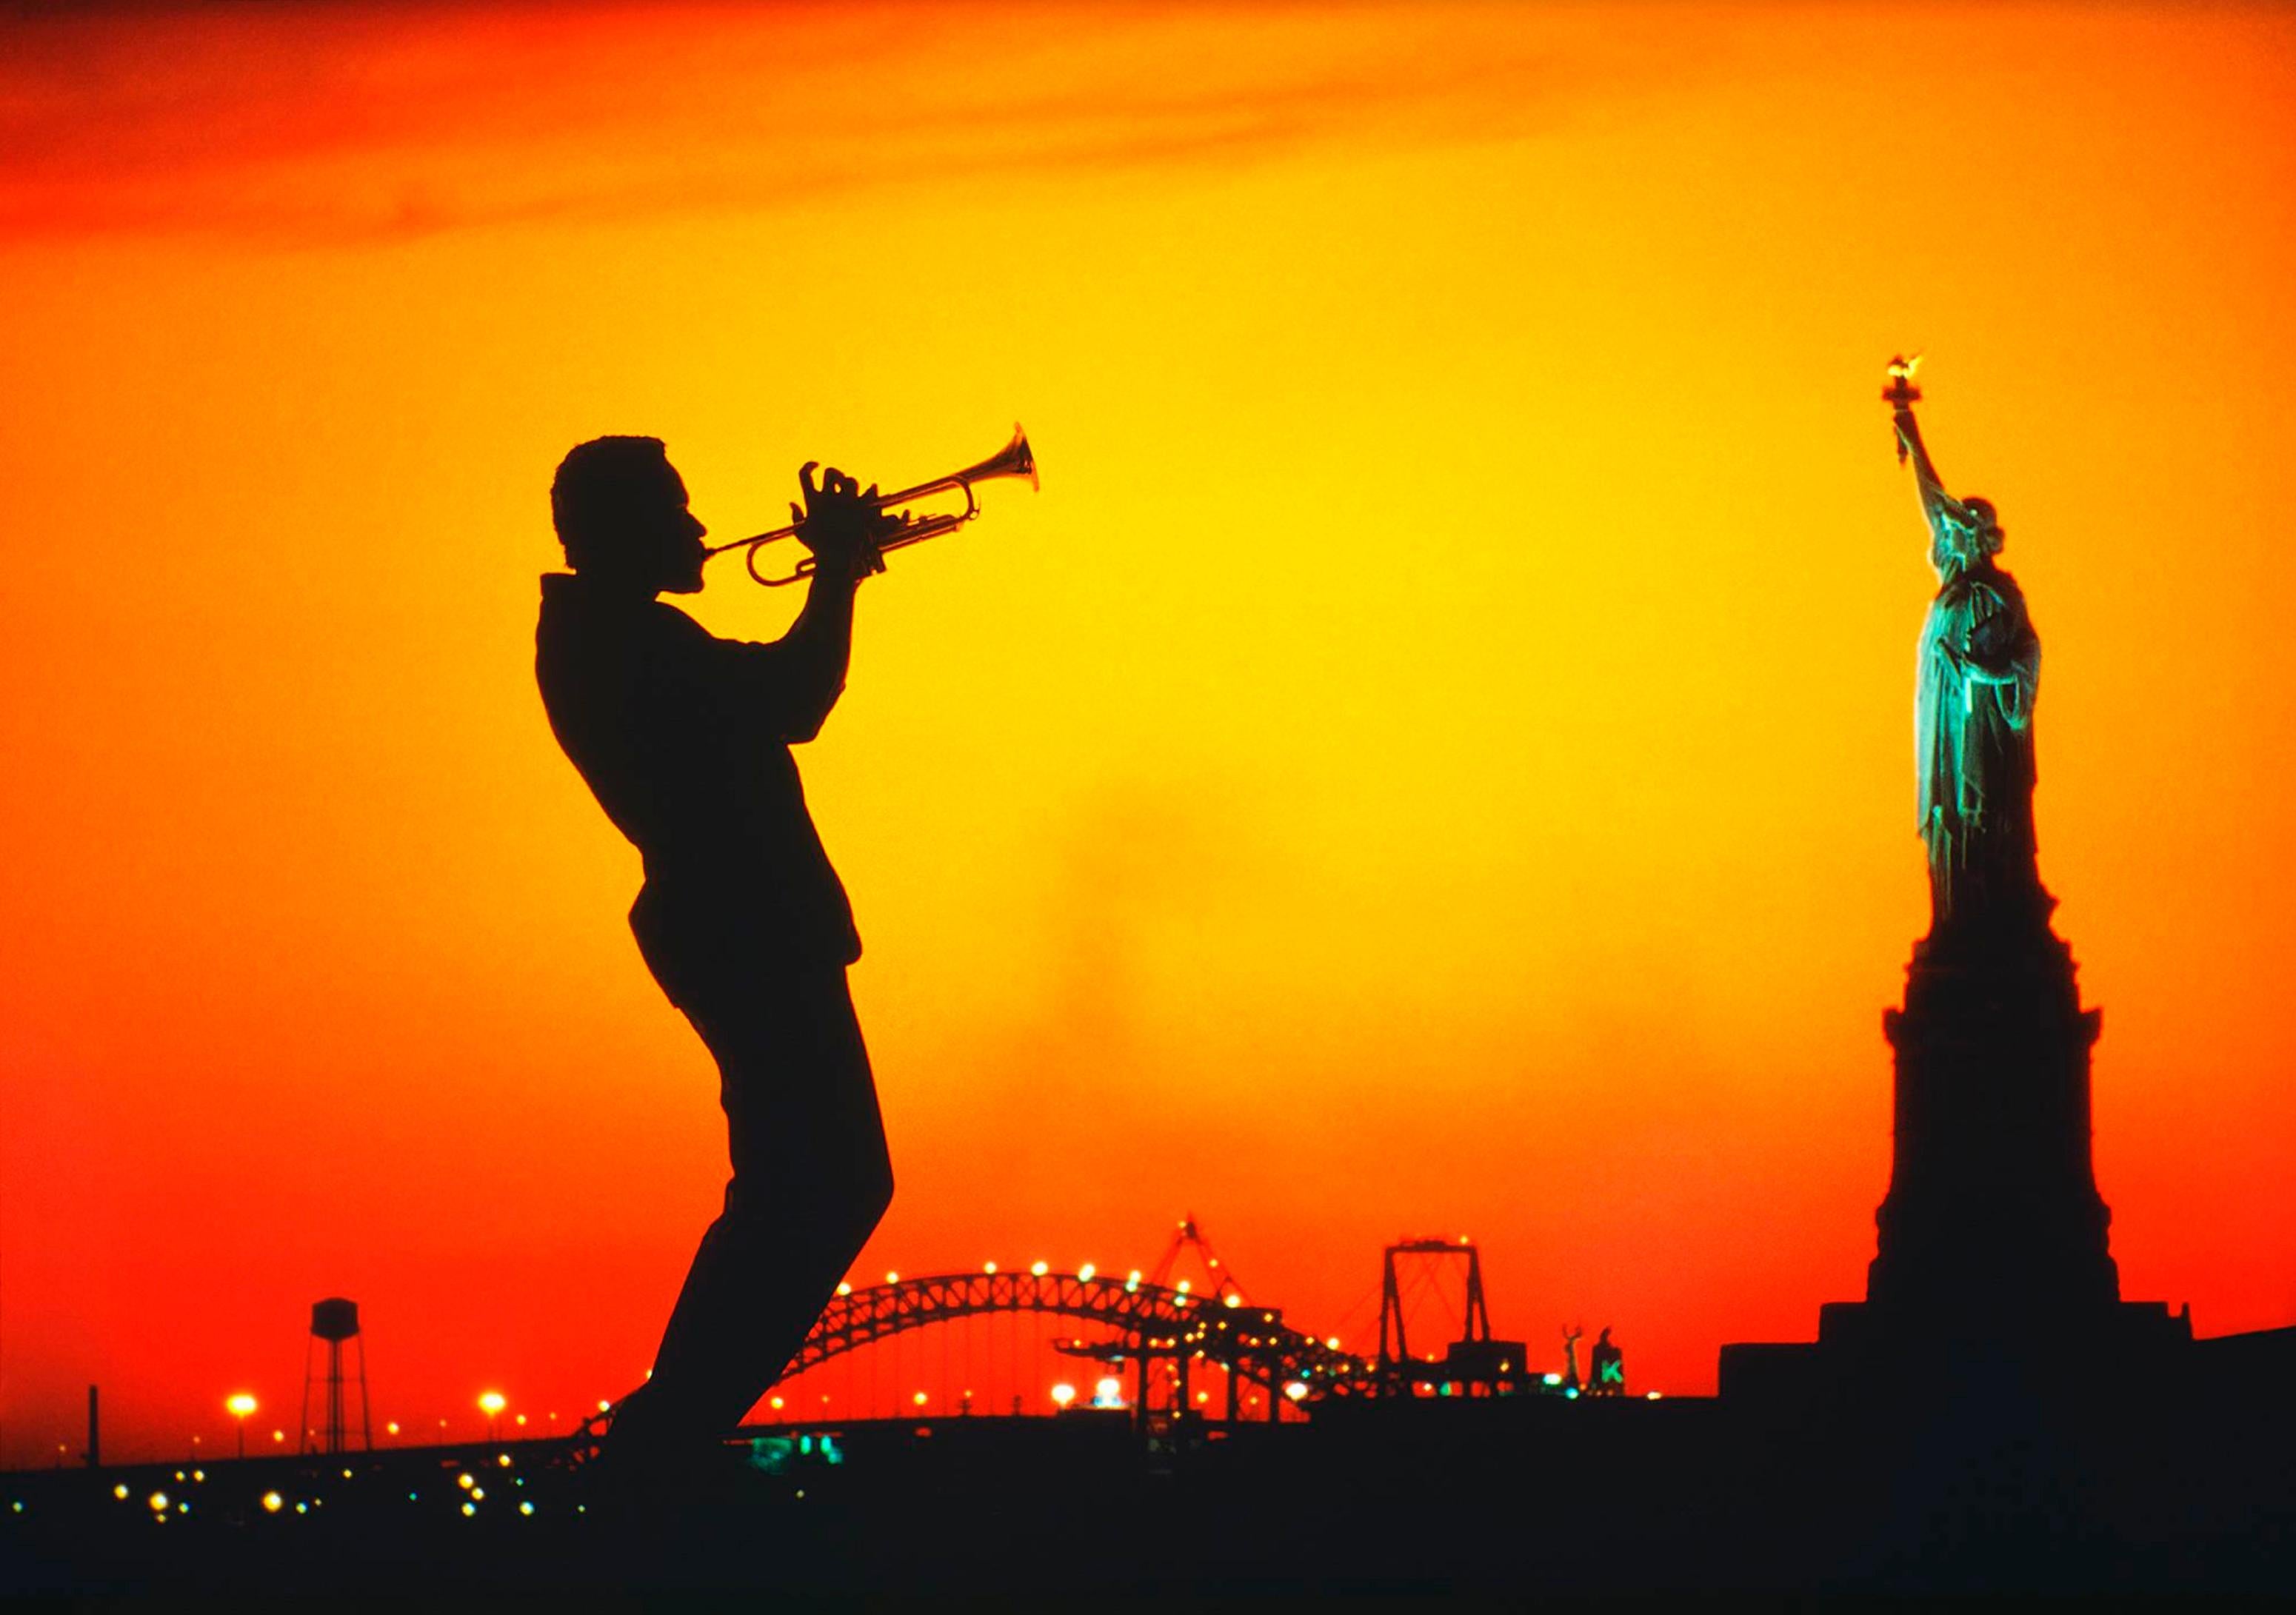 Mitchell Funk Figurative Photograph – Trompeter-Jazz-Musiker  und Freiheitsstatue